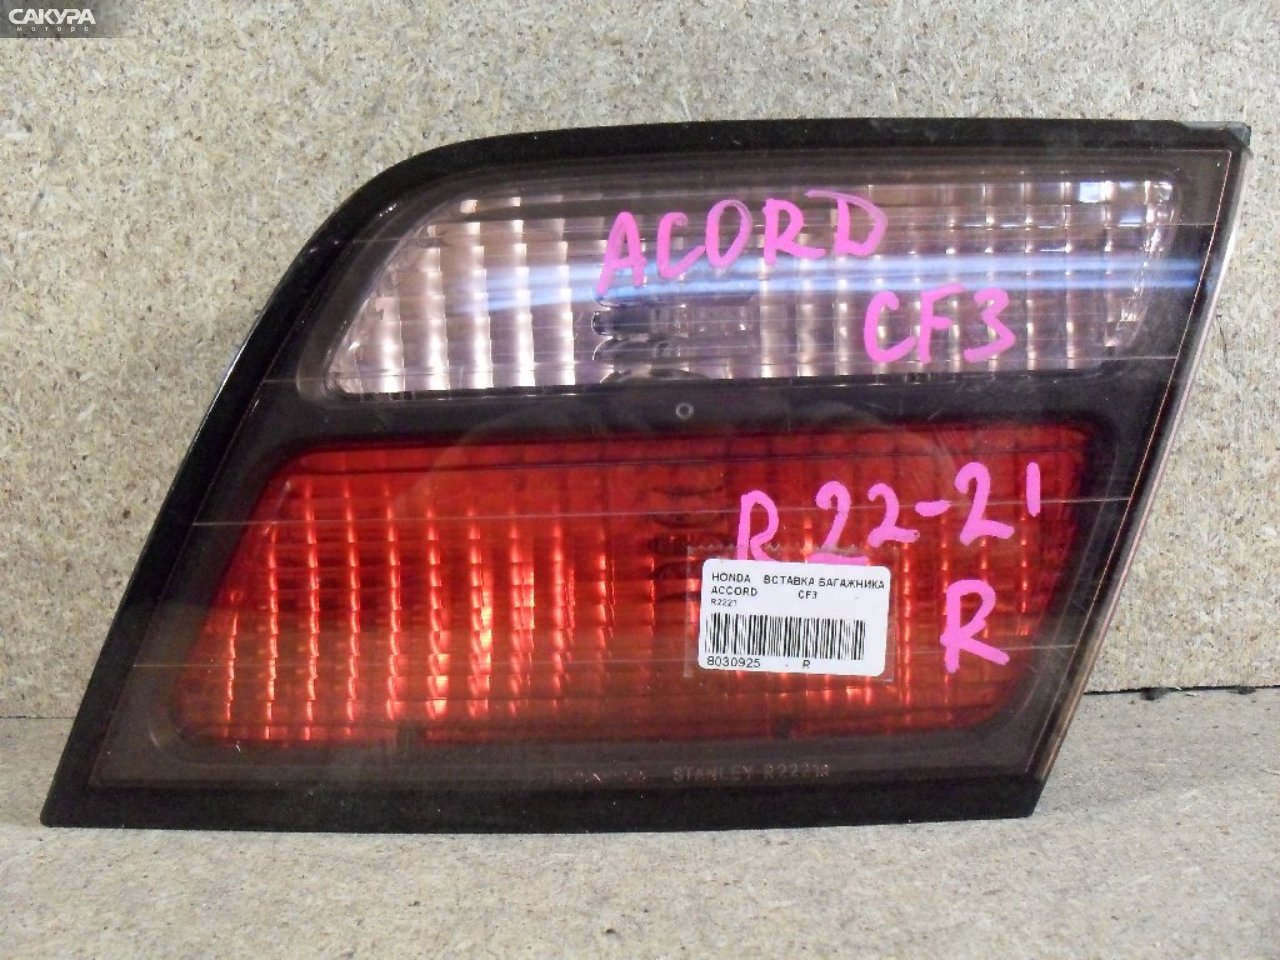 Фонарь вставка багажника правый Honda Accord CF3 R2221: купить в Сакура Абакан.